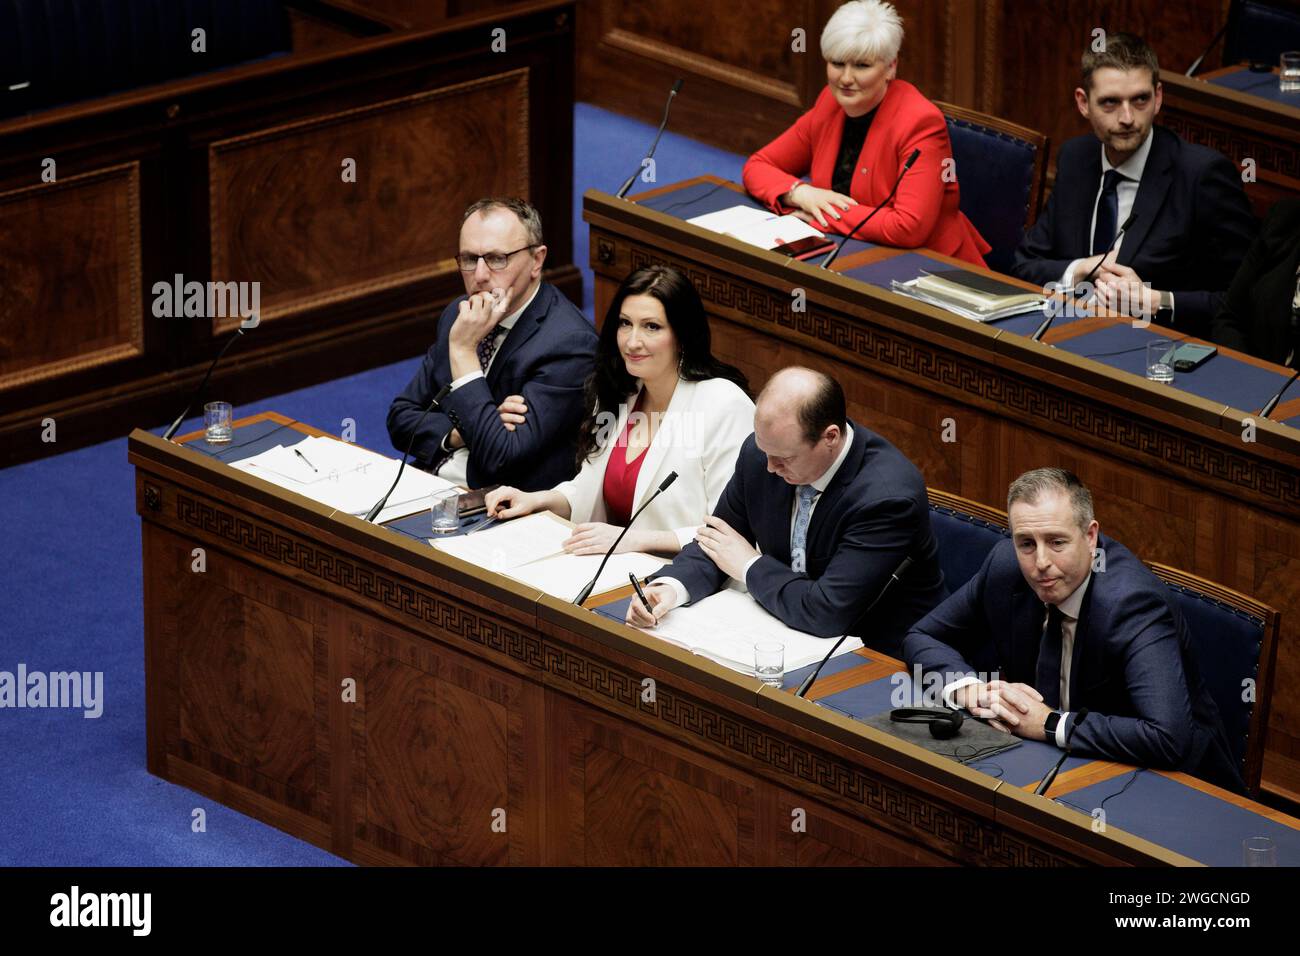 Vice primo ministro dell'Irlanda del Nord Emma Little-Pengelly (seconda da sinistra in prima fila), con colleghi di partito , durante la seduta dell'Assemblea dell'Irlanda del Nord a Stormont. Data immagine: Sabato 3 febbraio 2024. Foto Stock